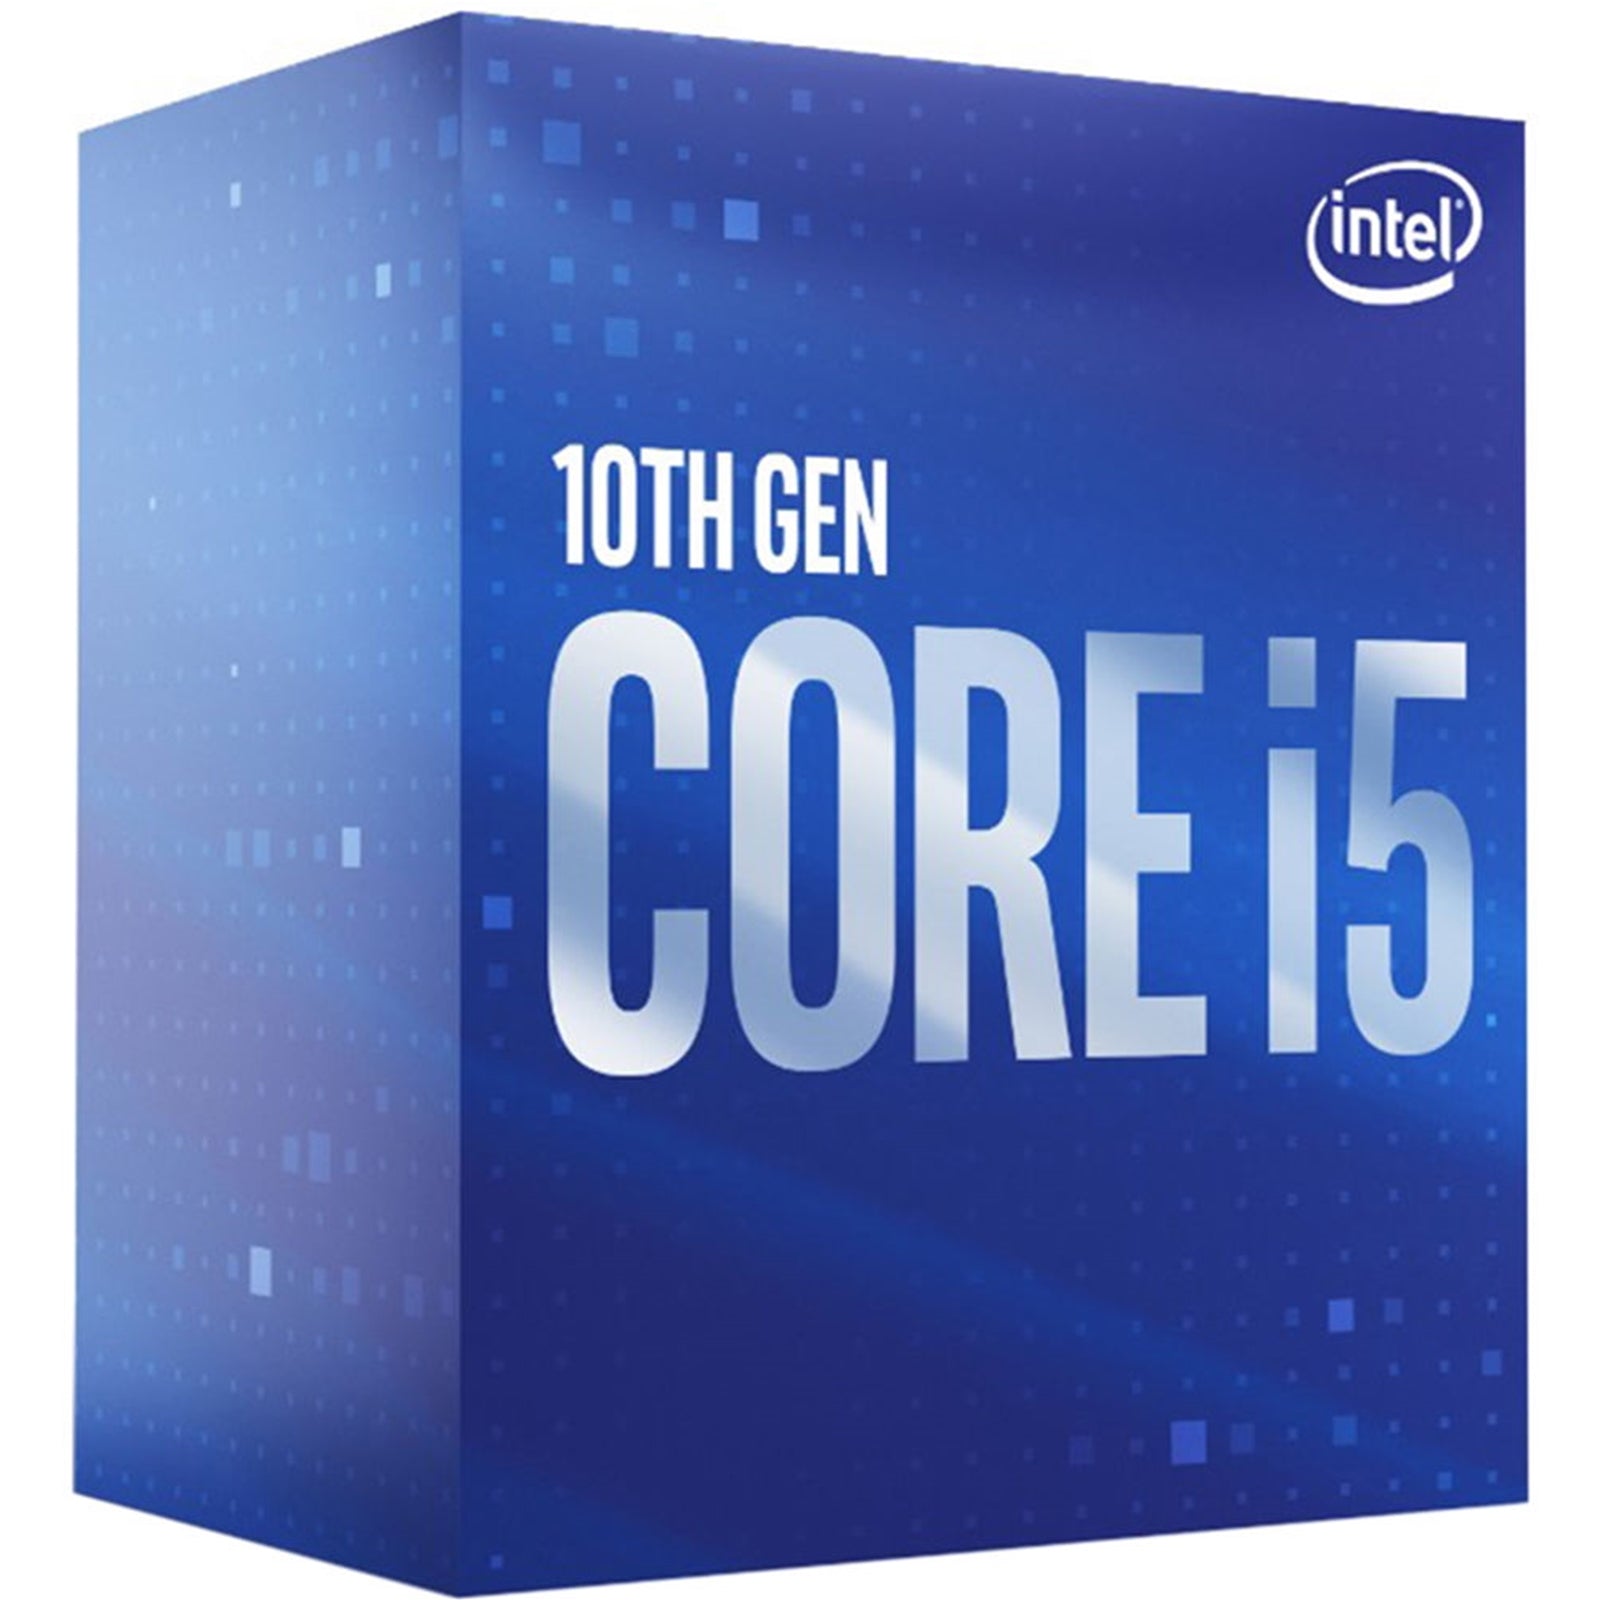 Intel Core i5 10400 2.9GHz Processor - 6 Cores, 12 Threads, UHD Graphics 630, LGA1200 Socket